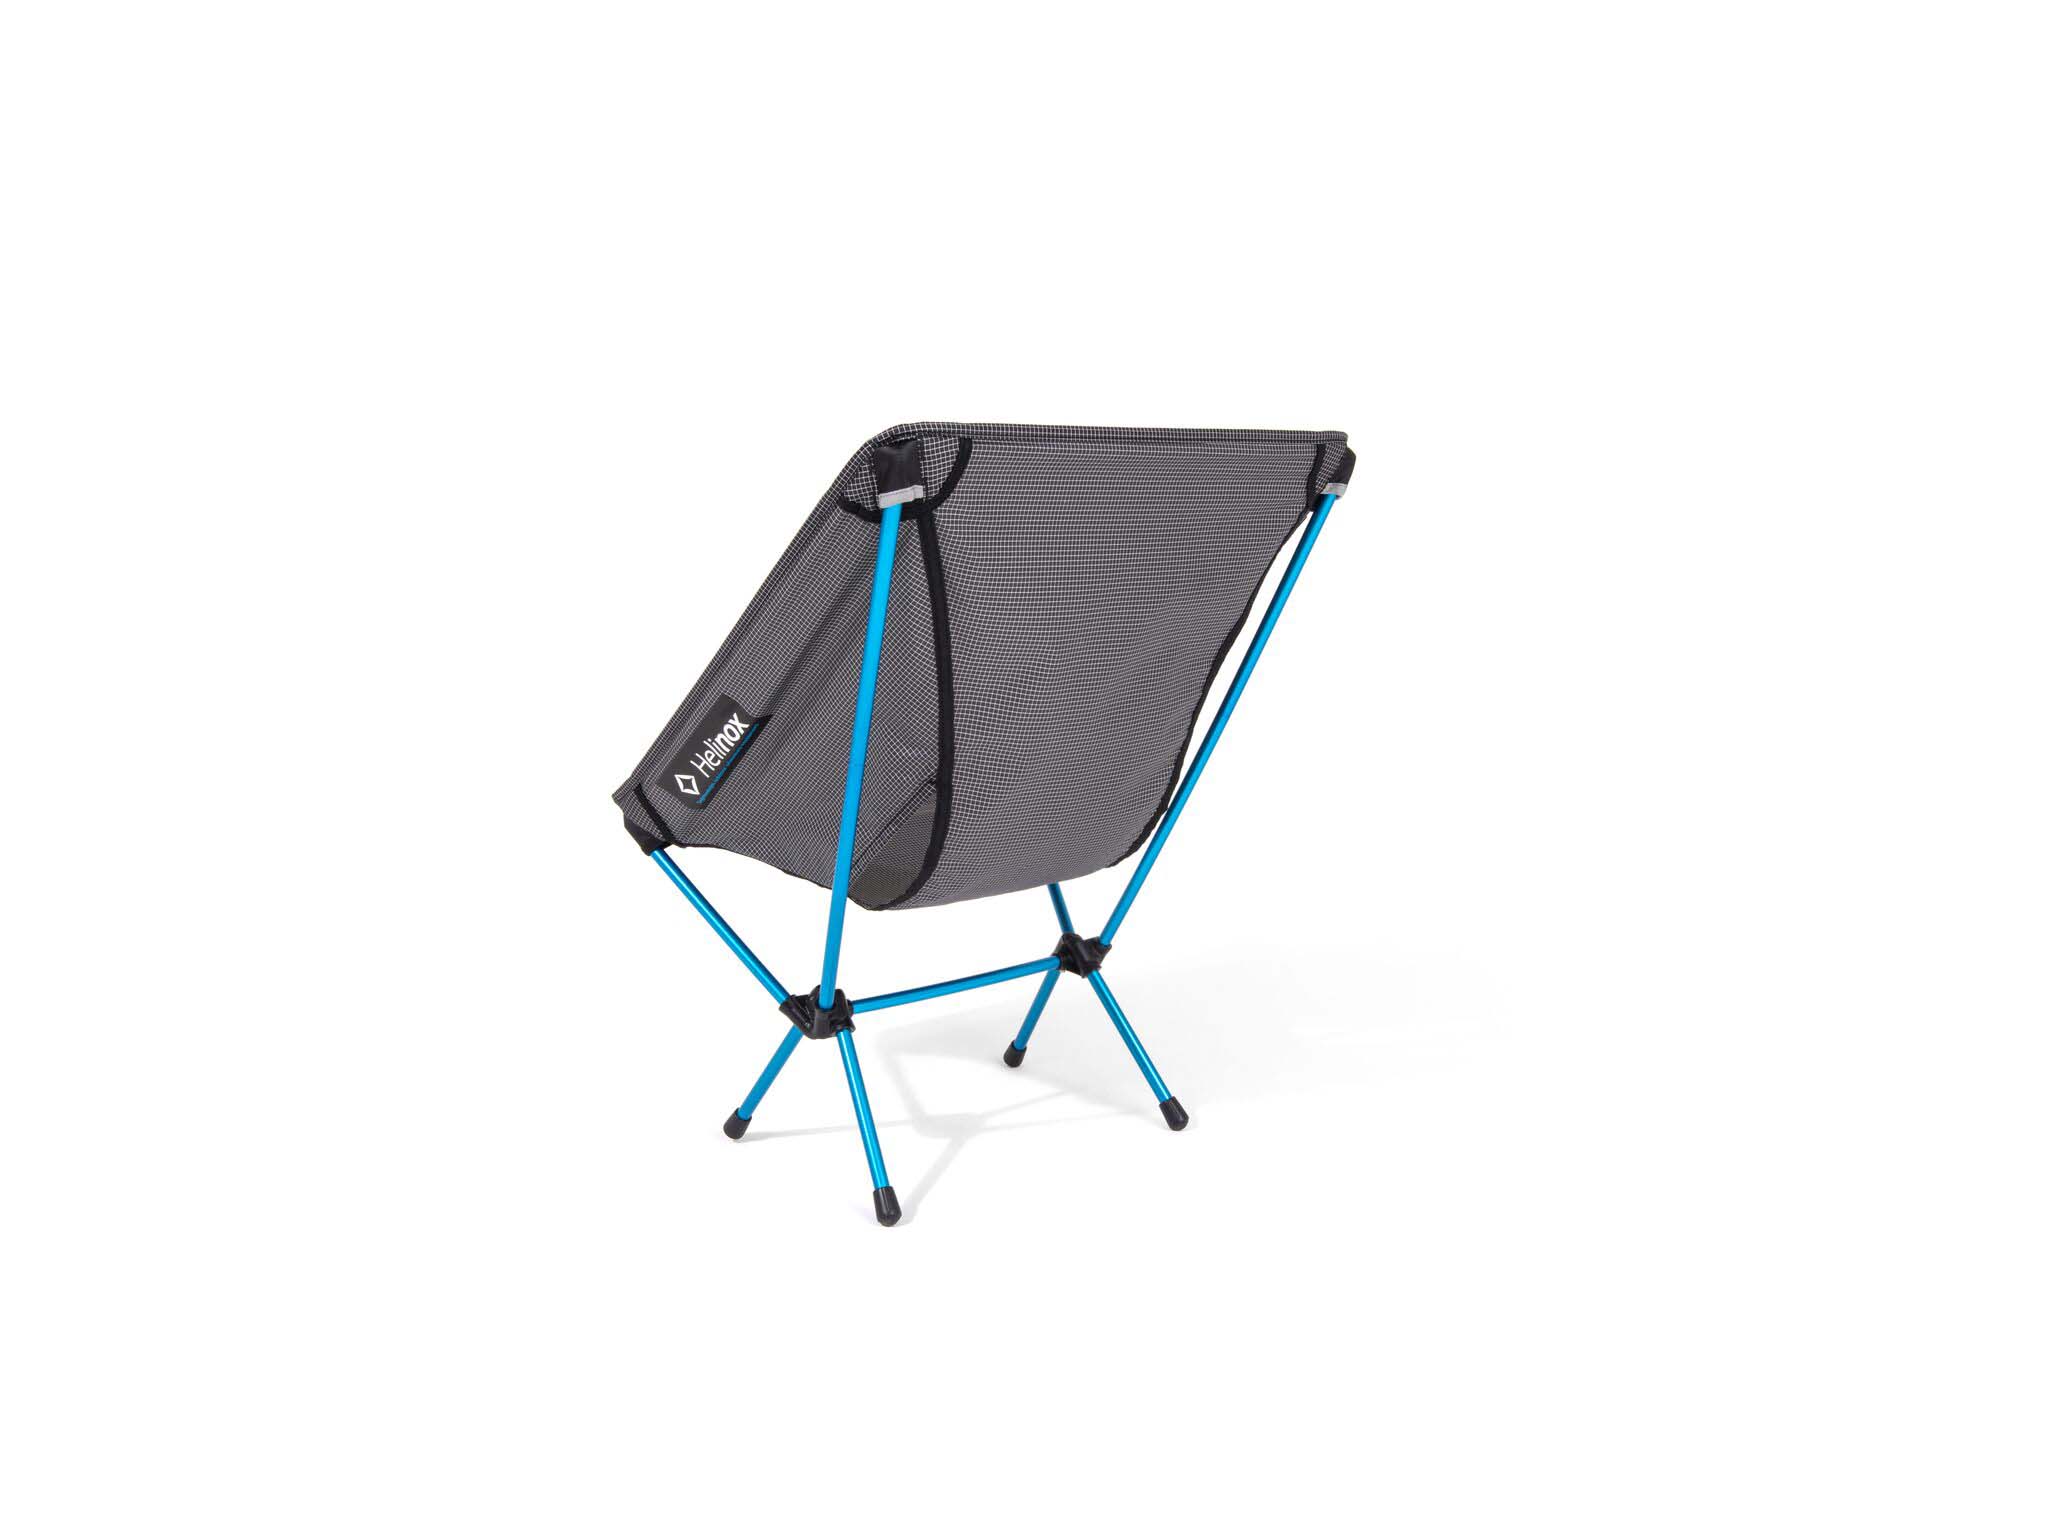 HELINOX Chair Zero - Campingstuhl